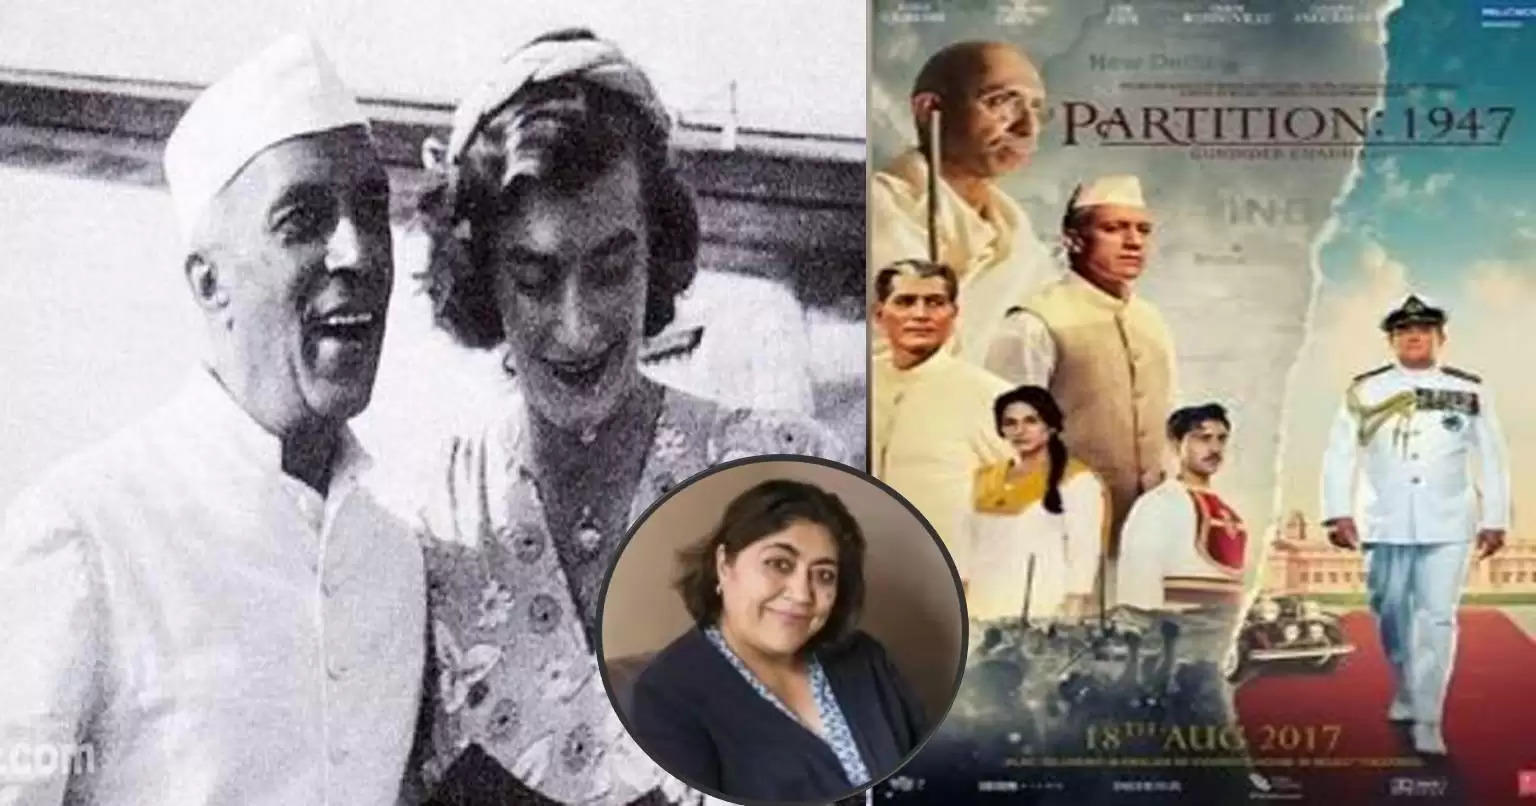 पंडित जवाहरलाल नेहरू और लेडी माउंटबेटन के बीच ऐसा क्या दिखाने वाली हैं गुरिंदर चड्ढा, रिलीज से पहले ही फिल्म फंस गई है विवादों में